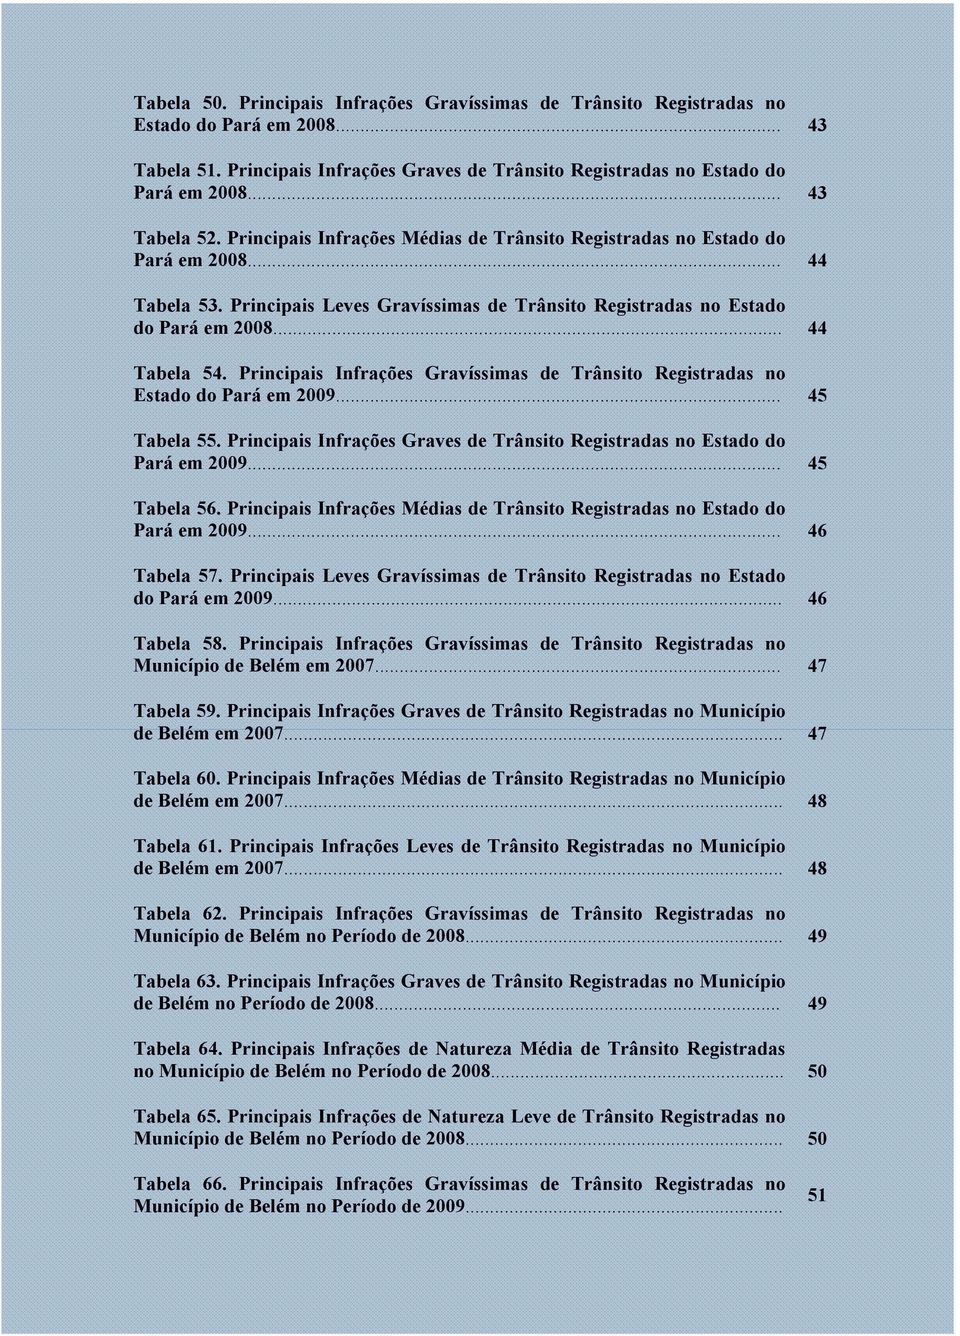 .. 44 Tabela 54. Principais Infrações Gravíssimas de Trânsito Registradas no Estado do Pará em 2009... 45 Tabela 55. Principais Infrações Graves de Trânsito Registradas no Estado do Pará em 2009.